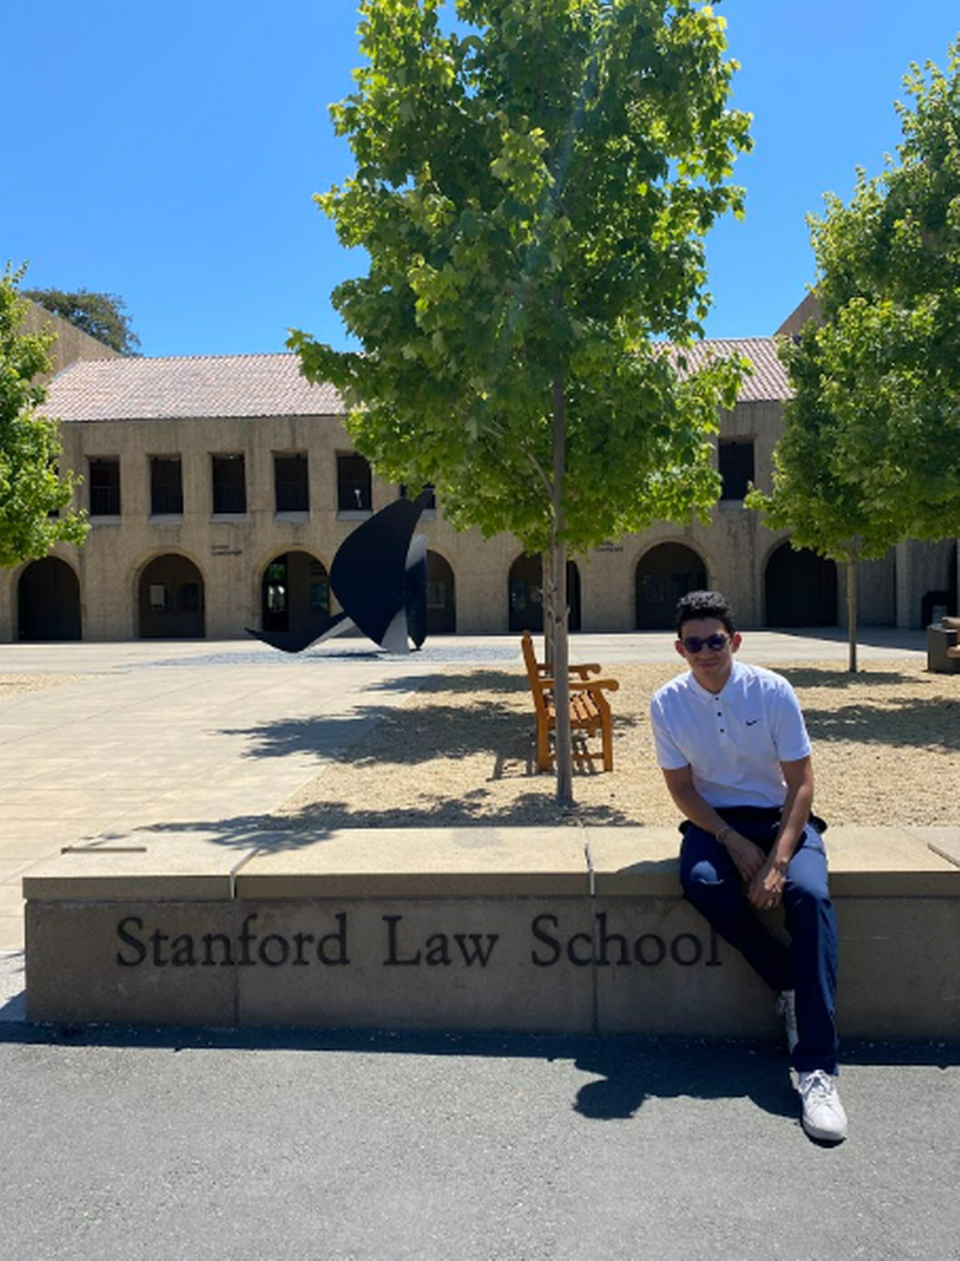 Jornada de orientación estudiantil en Stanford Law School, a la que asistió Luis Moros luego de ser seleccionado como uno de los 19 estudiantes que cursarán programa piloto de la escuela de leyes